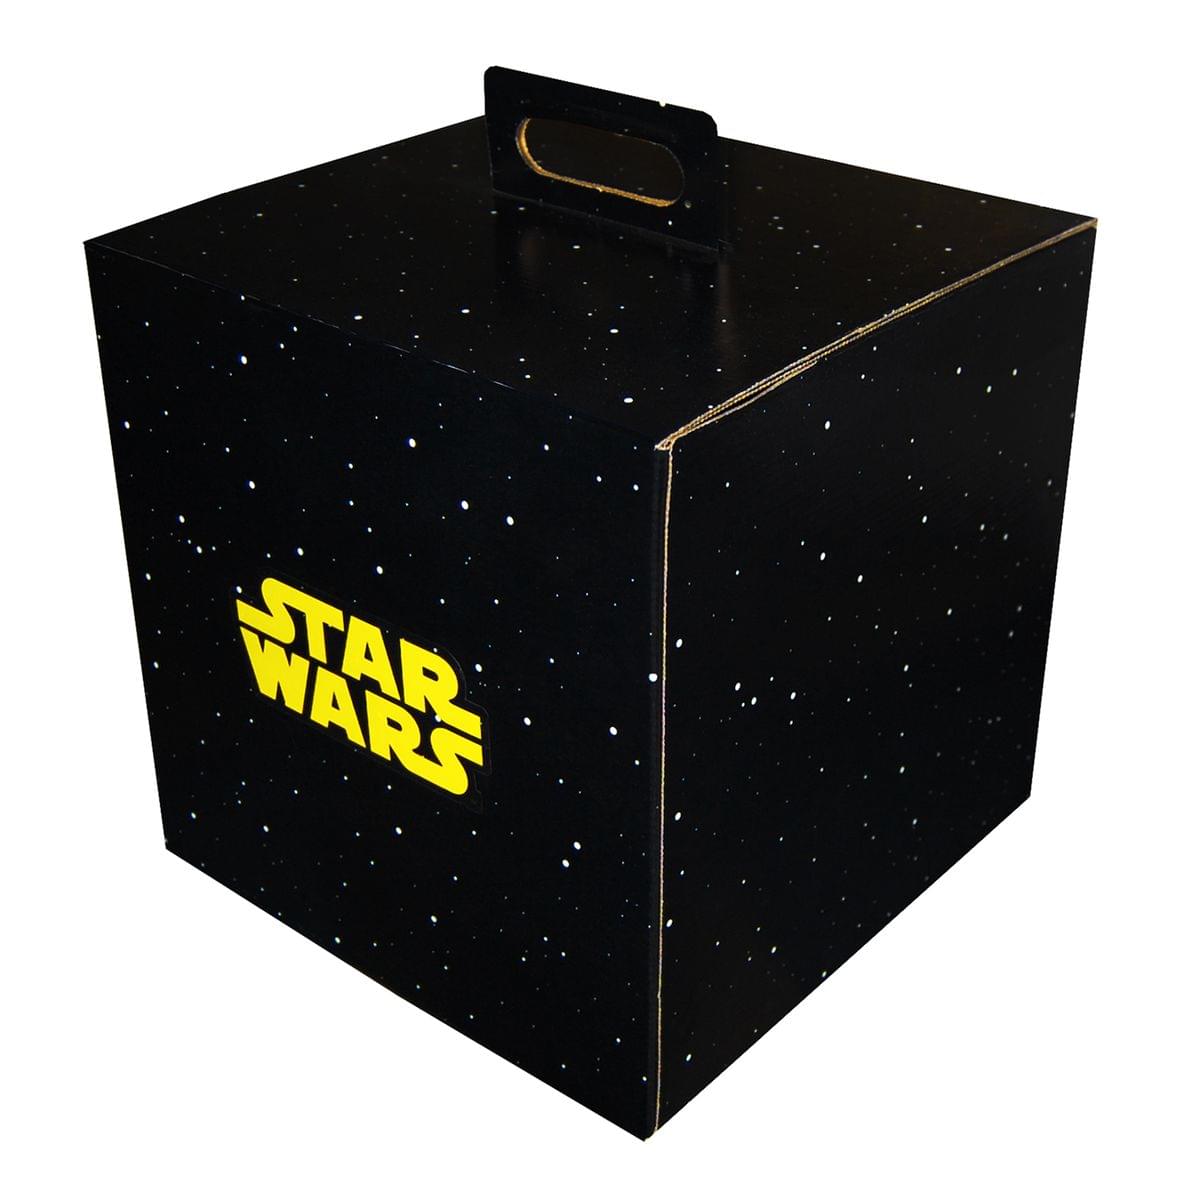 Star Wars 9.5" x 9.5" x 9.5" Flat Empty Gift Box